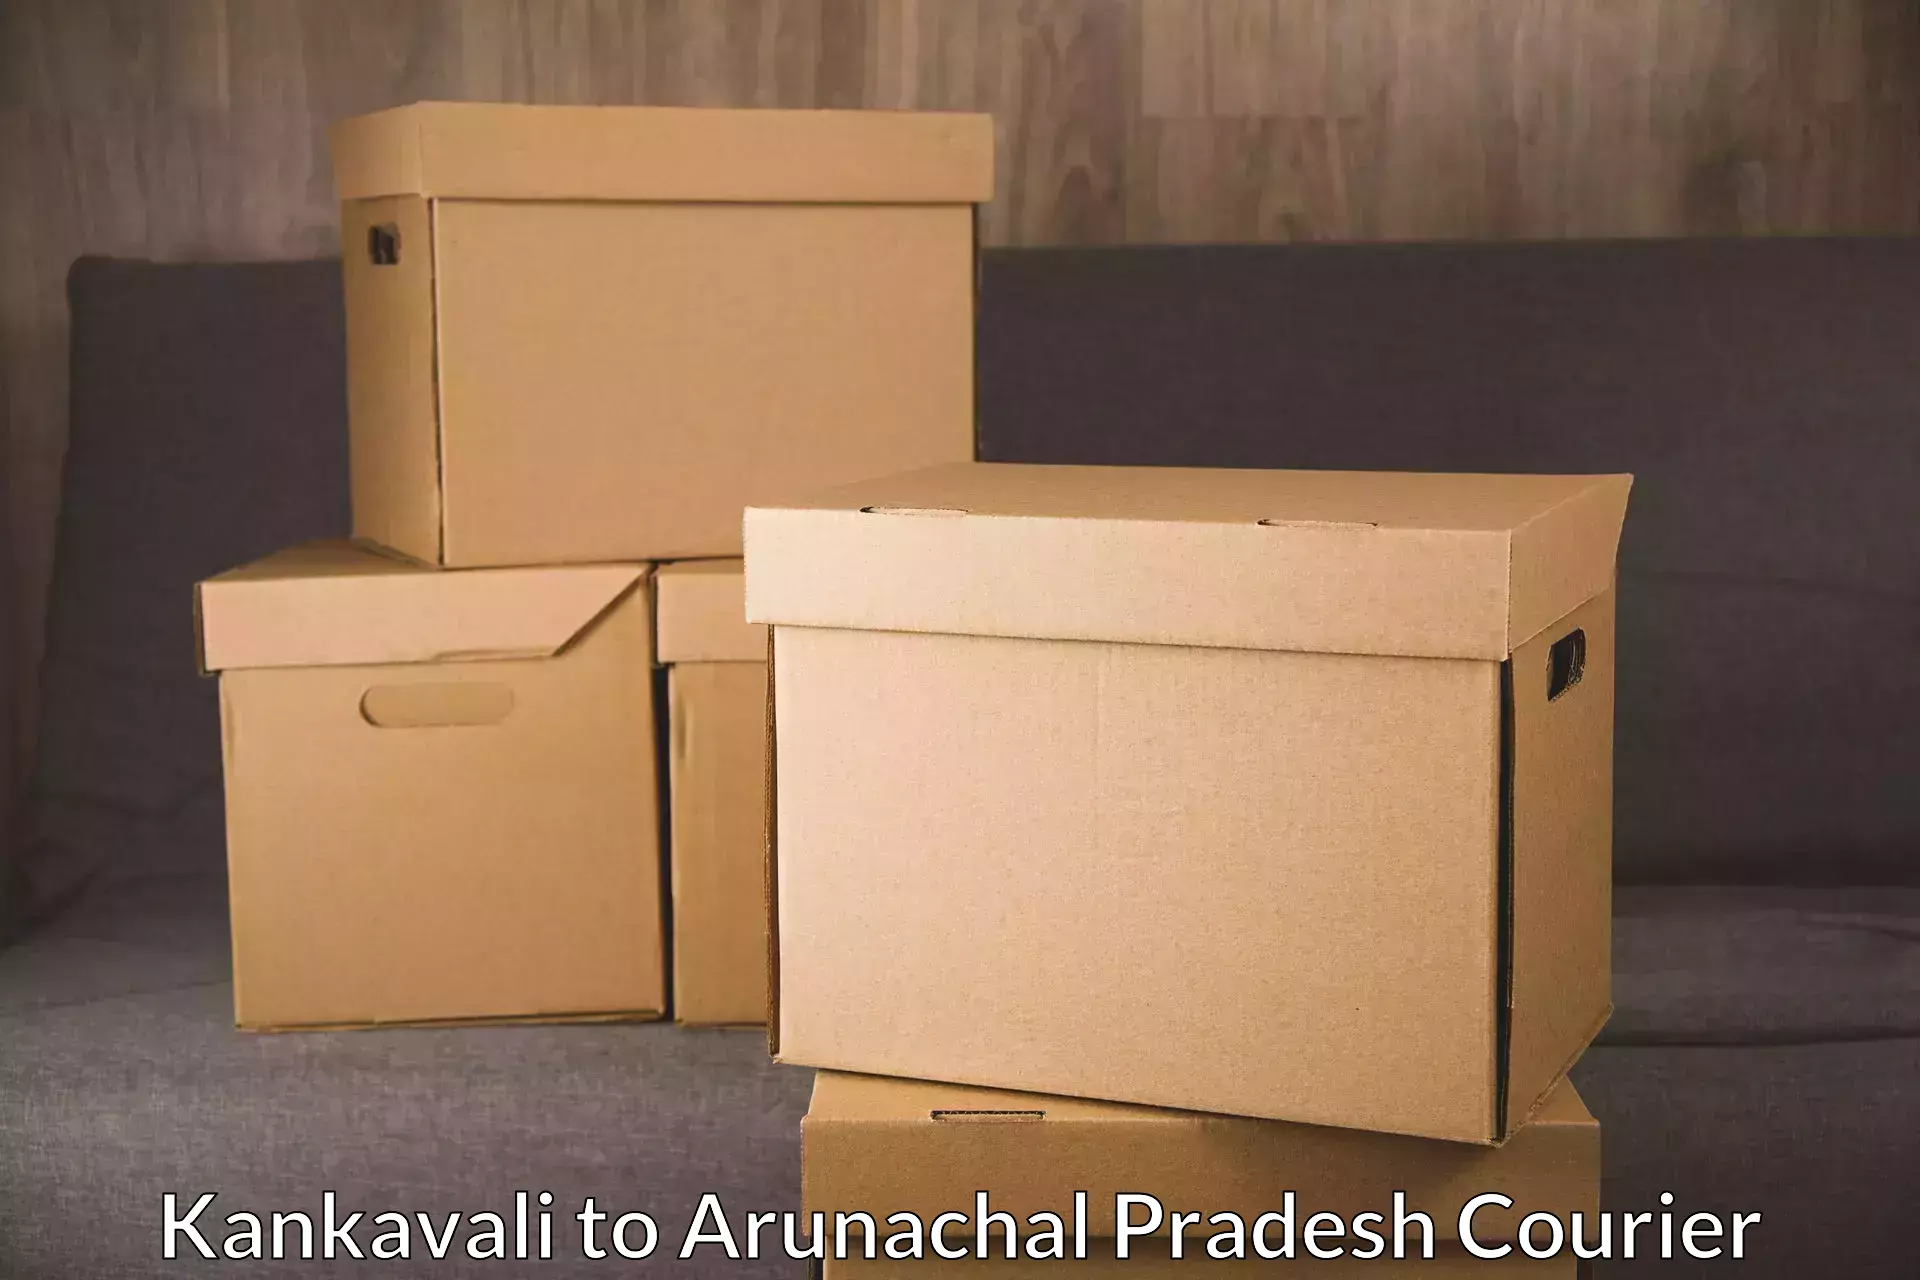 International courier networks in Kankavali to Arunachal Pradesh